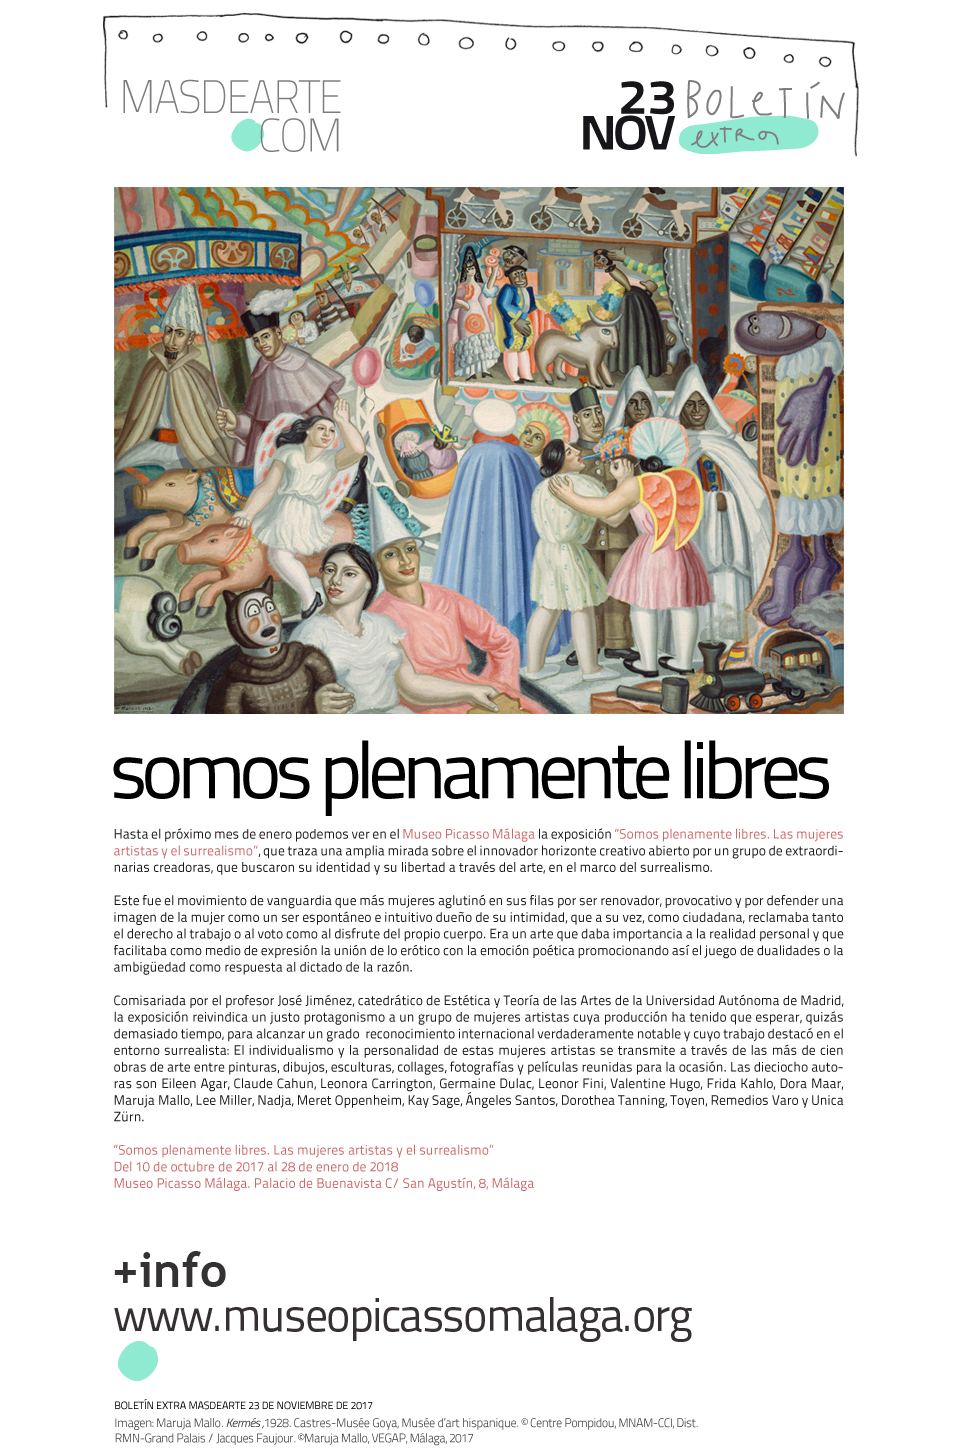 Somos plenamente libres. Las mujeres artistas y el surrealismo. Museo Picasso Málaga, del 10 de octubre de 2017 al 28 de enero de 2018